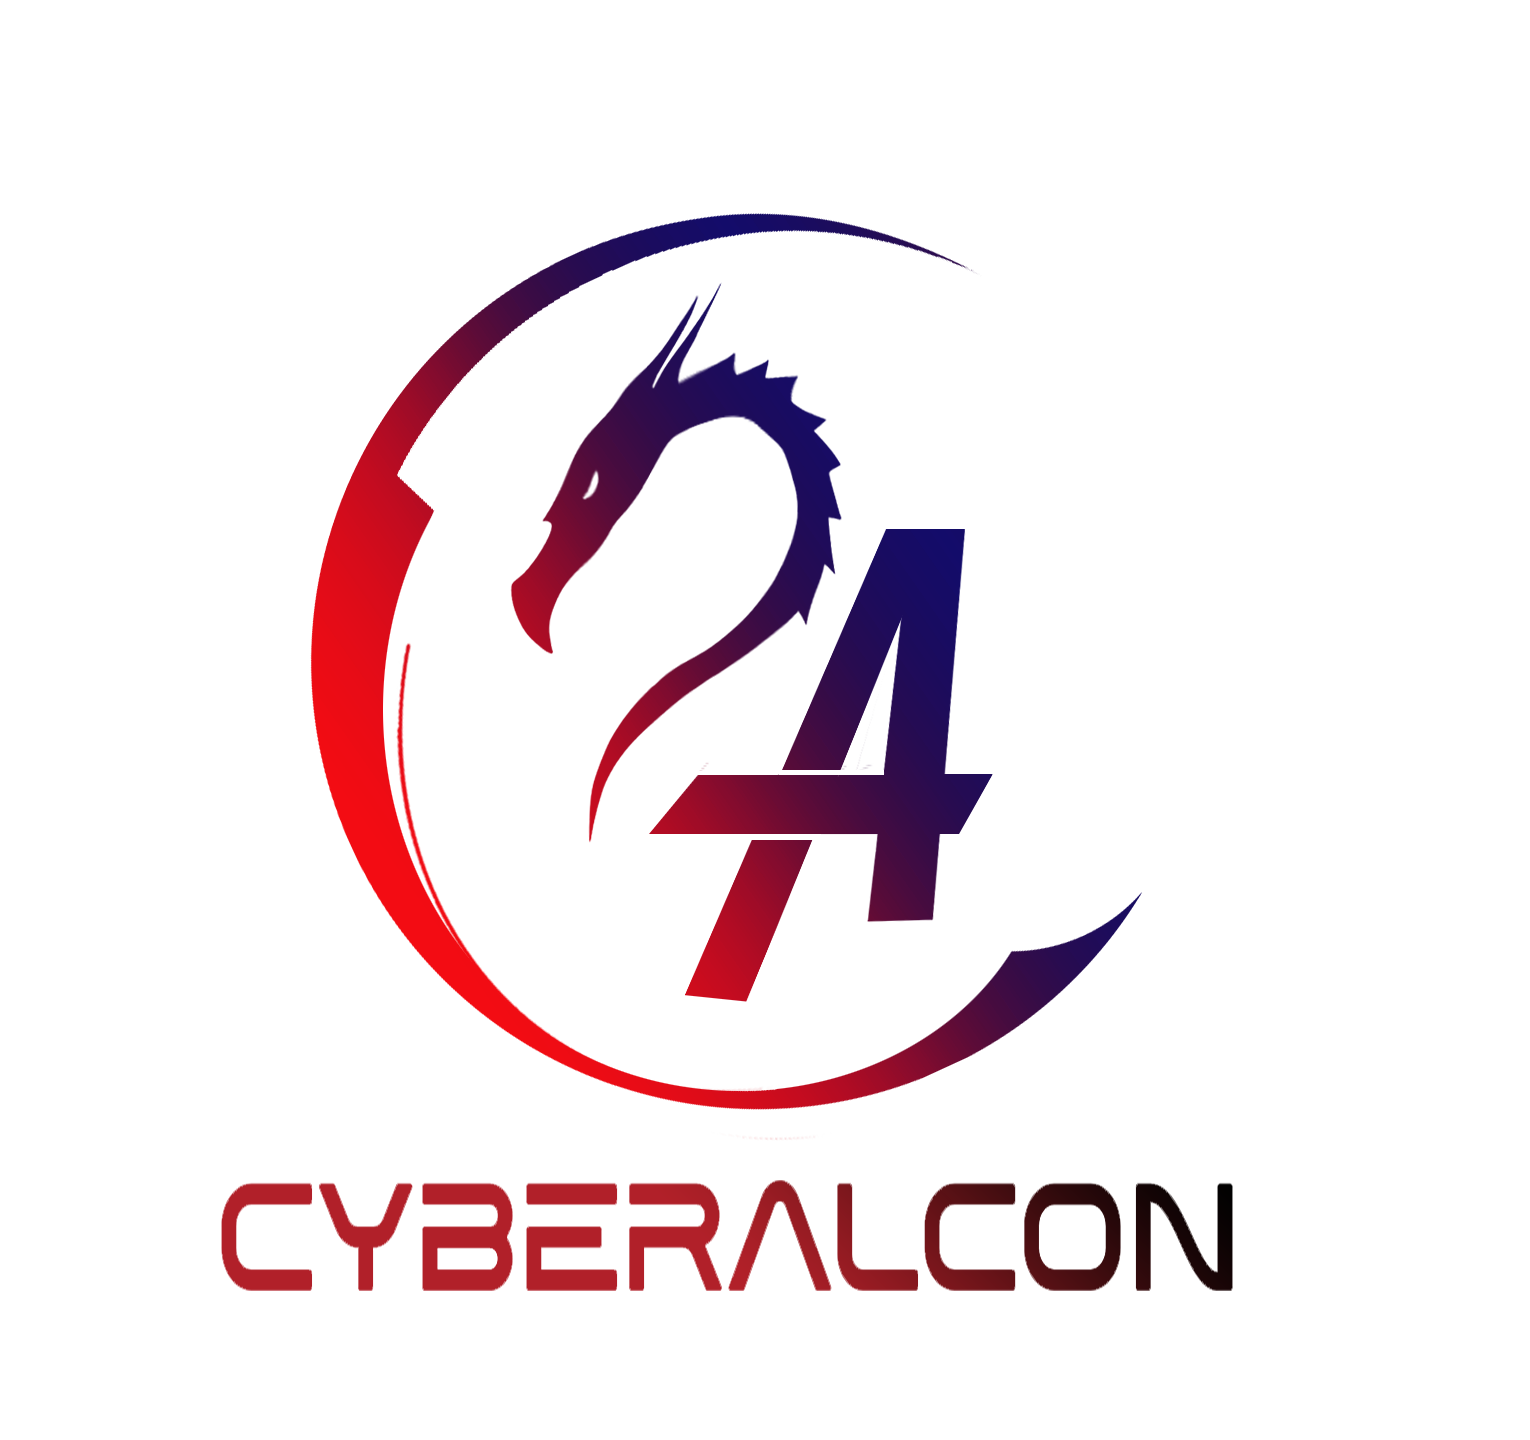 CyberAlcon